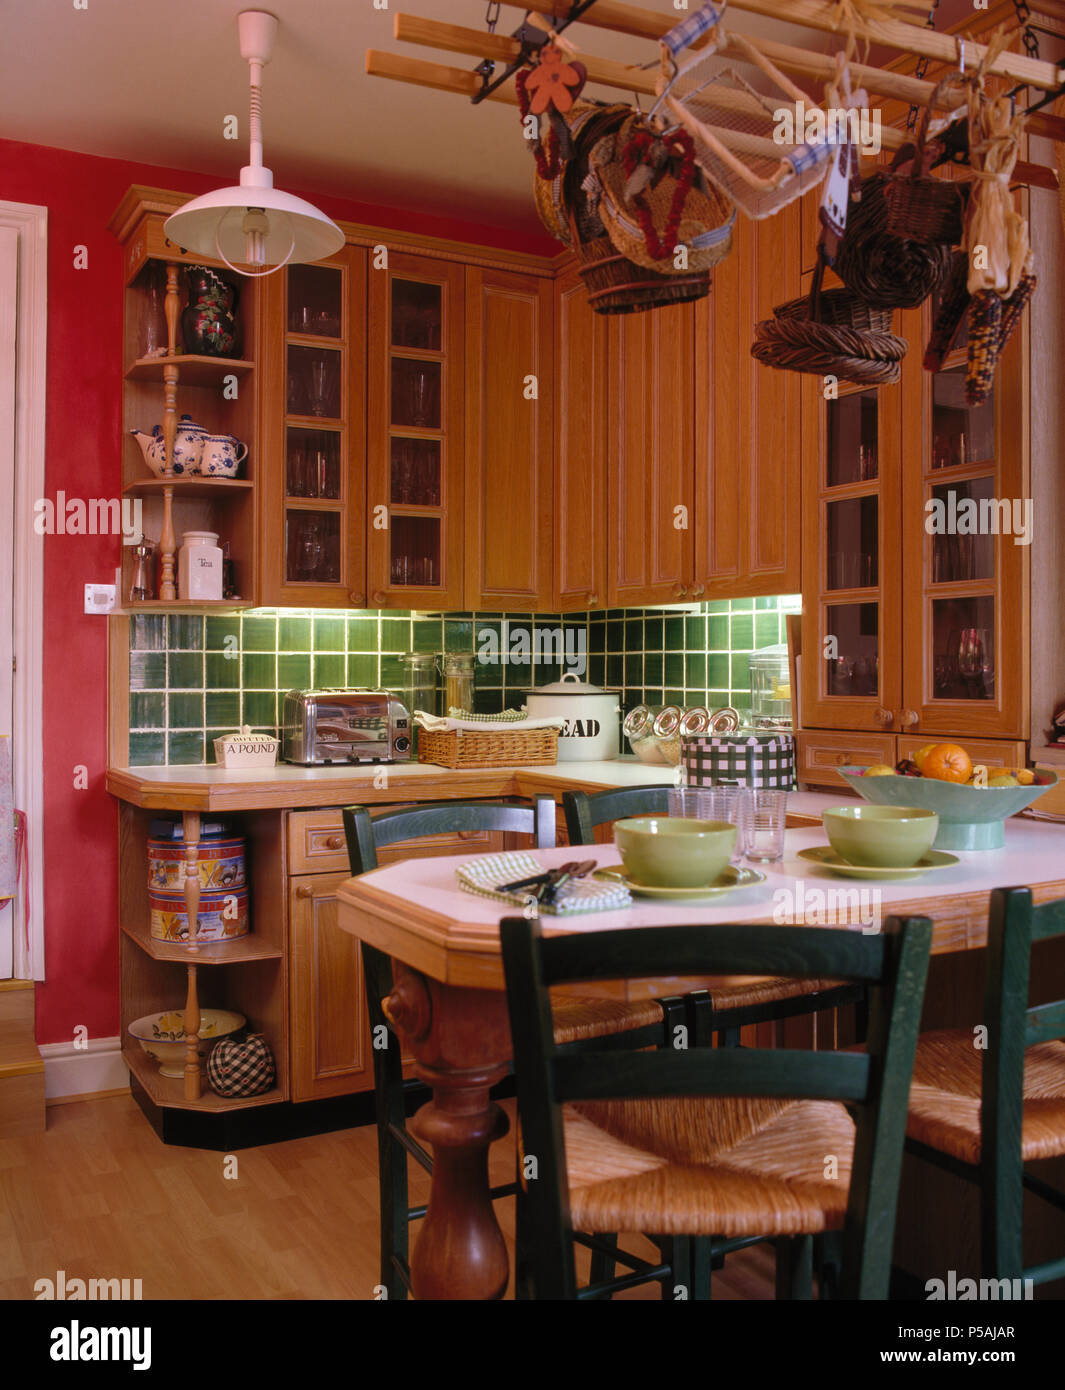 Rush verde sentado a la mesa, sillas para comer en la cocina del país rosa con azulejos verdes por encima de la encimera Foto de stock